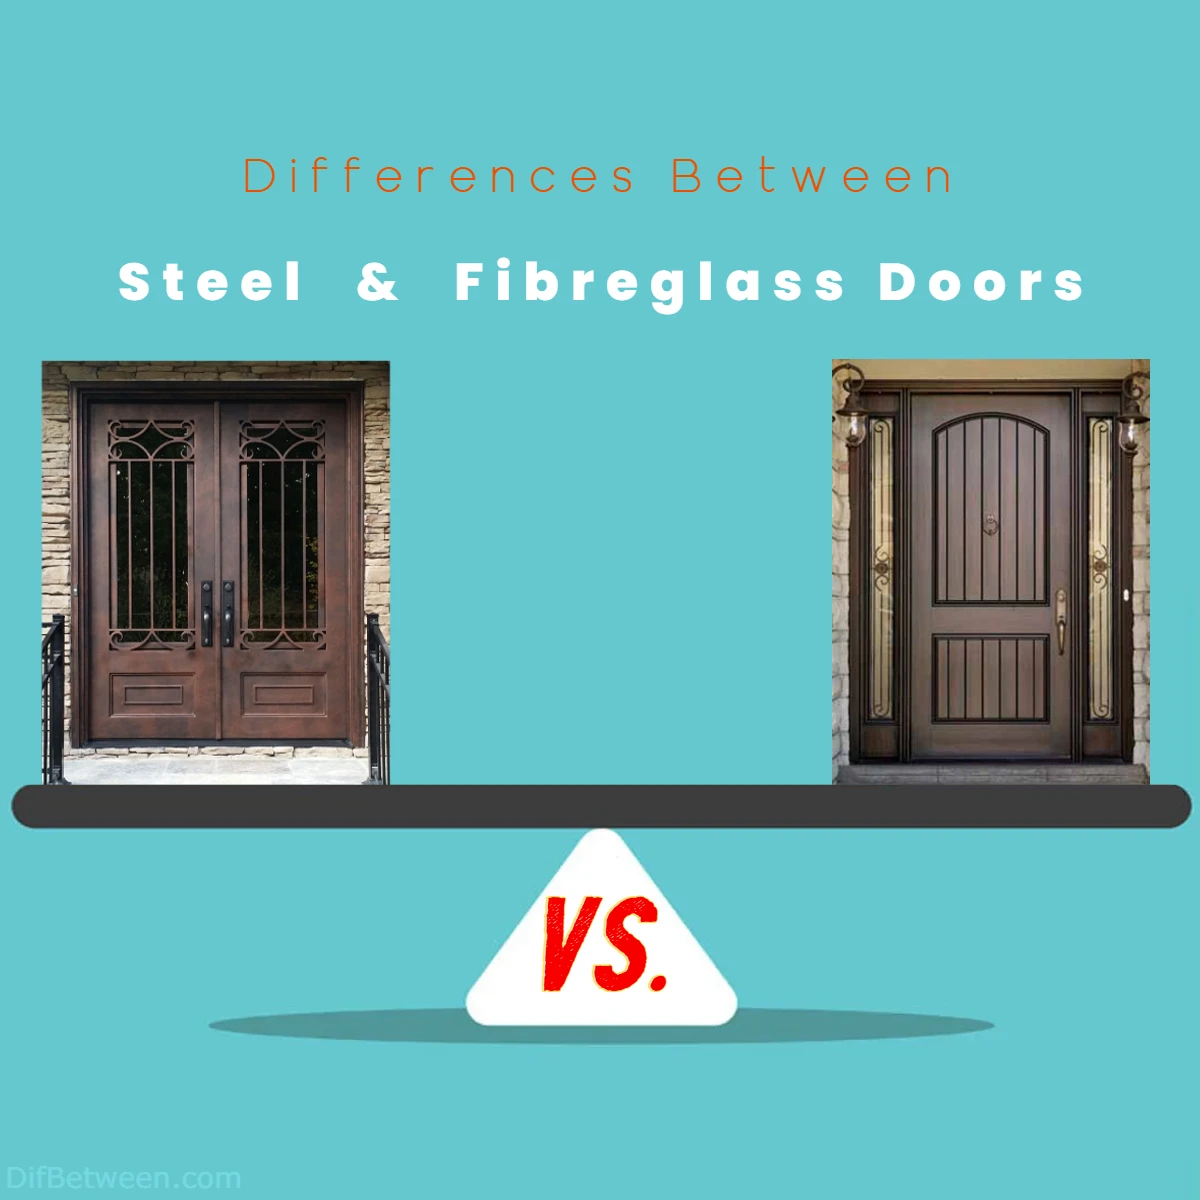 Differences Between Steel vs Fibreglass Doors